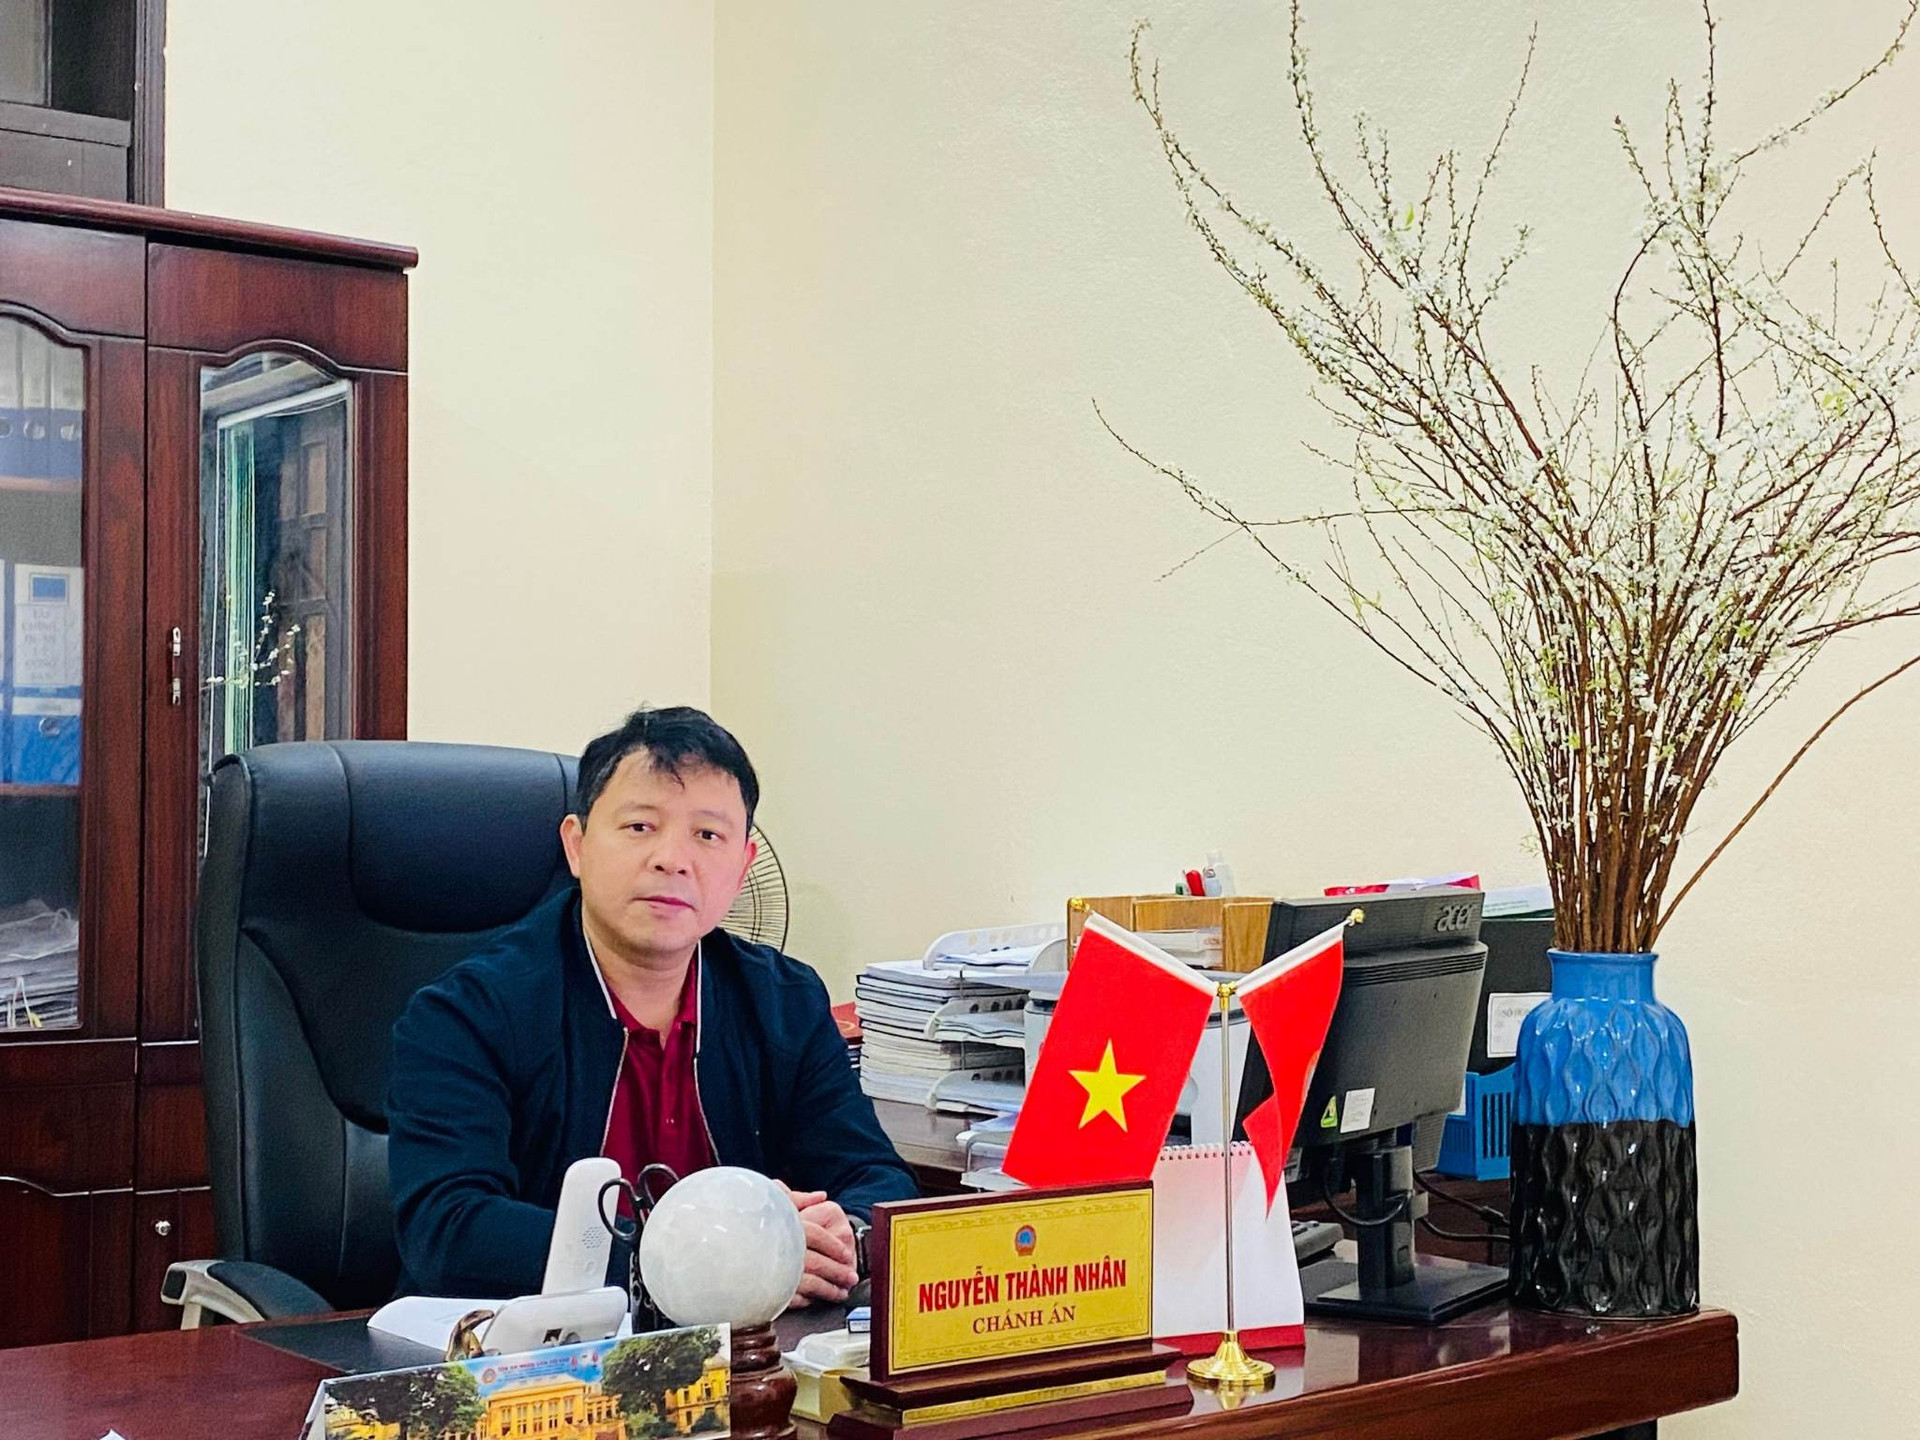 TAND huyện Thạch Hà: Đổi mới phong trào thi đua, nâng cao chất lượng xét xử